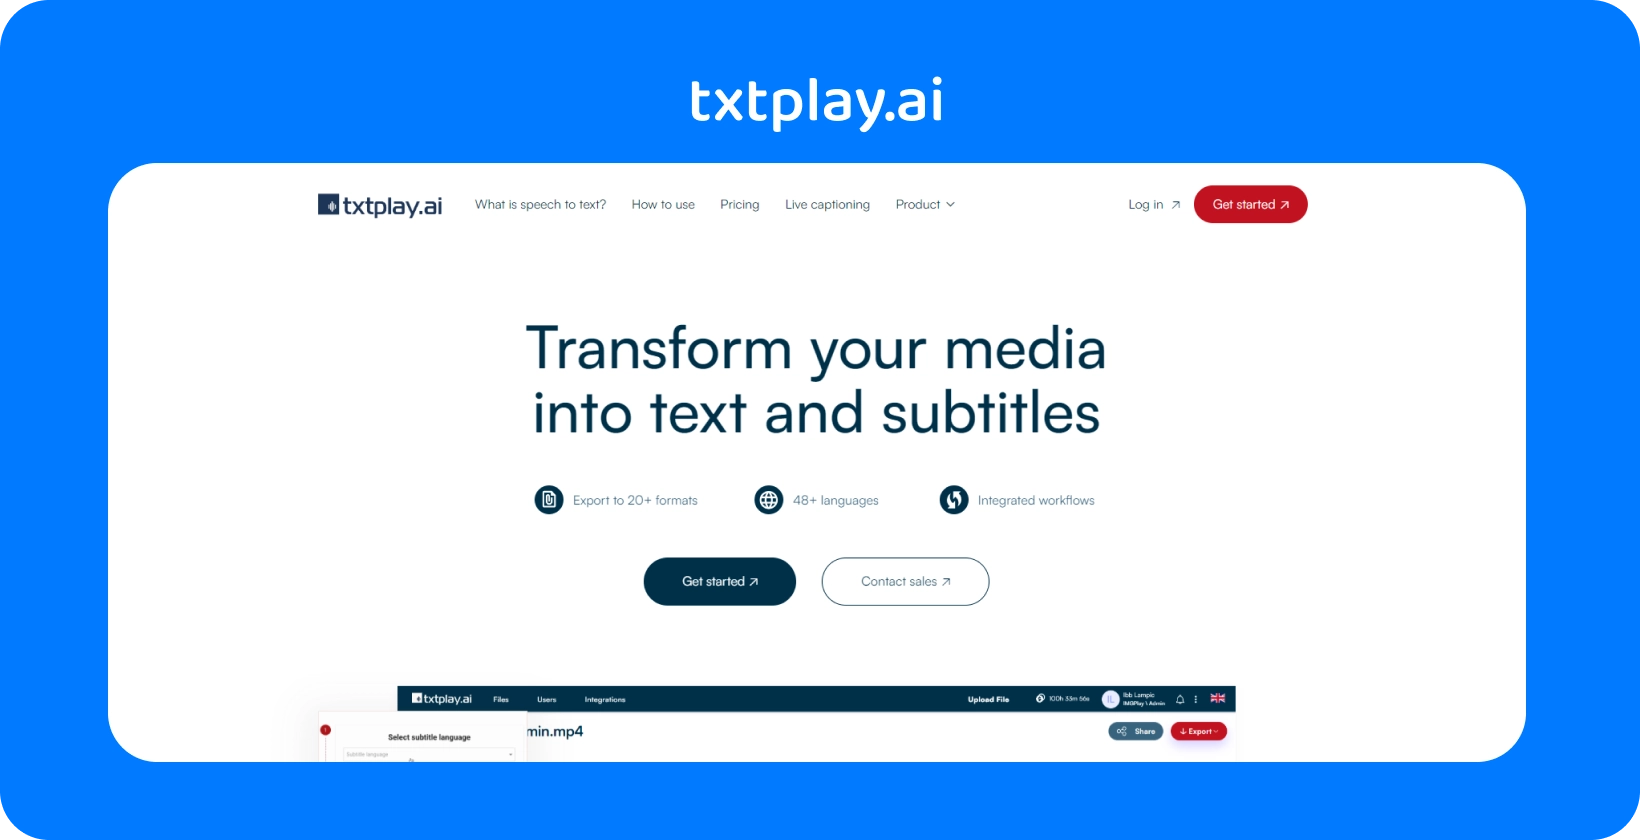 मीडिया को txtplay.ai के साथ टेक्स्ट और उपशीर्षक में बदलें, 48+ भाषाओं और 20+ प्रारूपों का समर्थन करें।